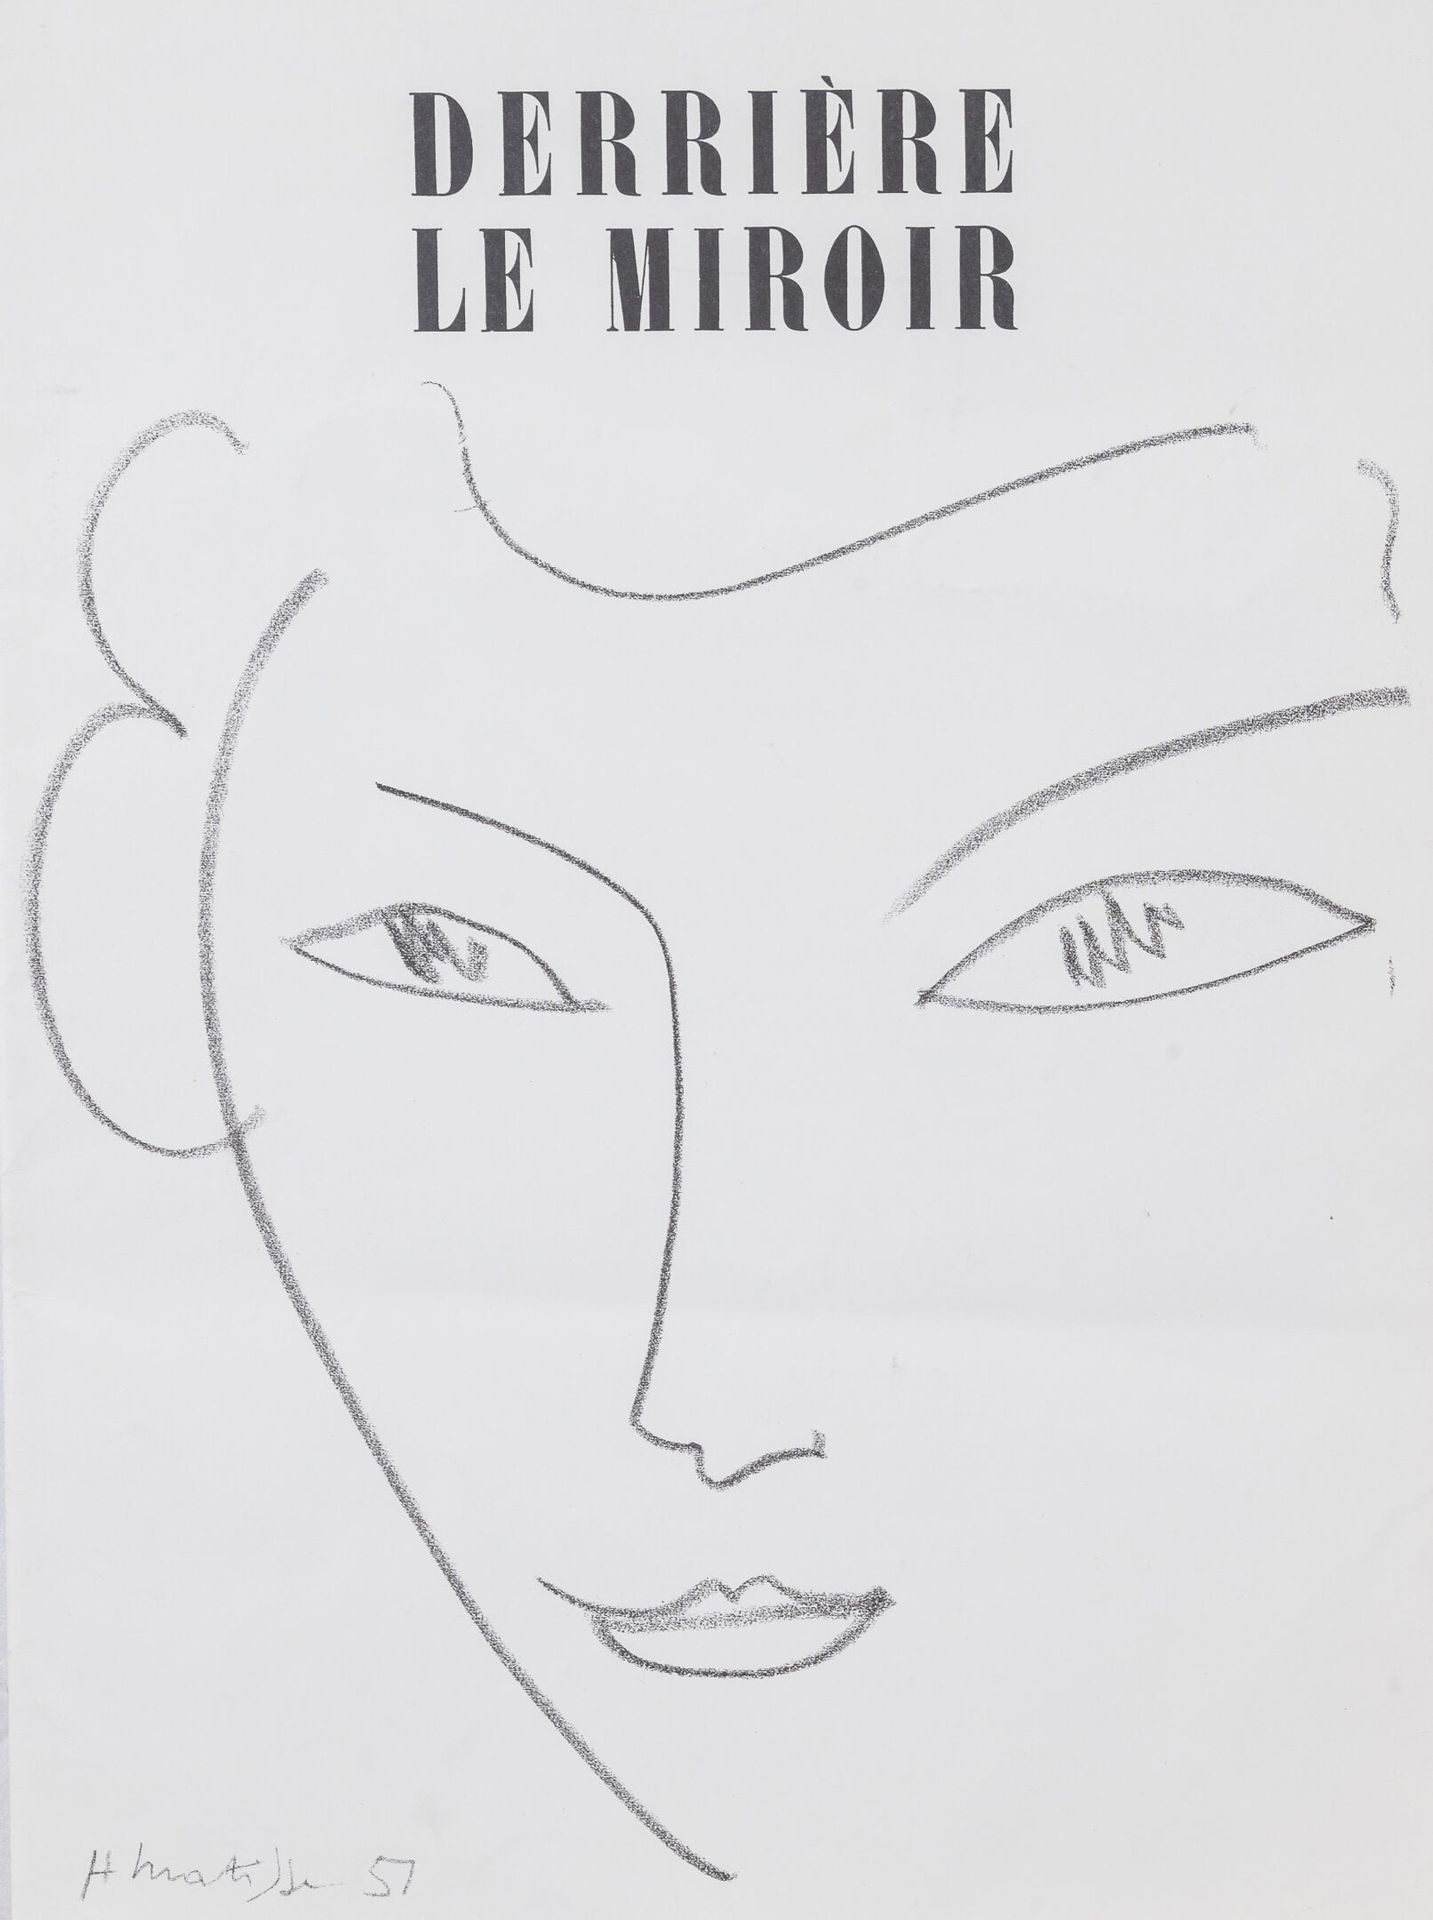 MATISSE, HENRI Derrière le miroir, réédition de 1981.

Fascicule éditions Pierre&hellip;